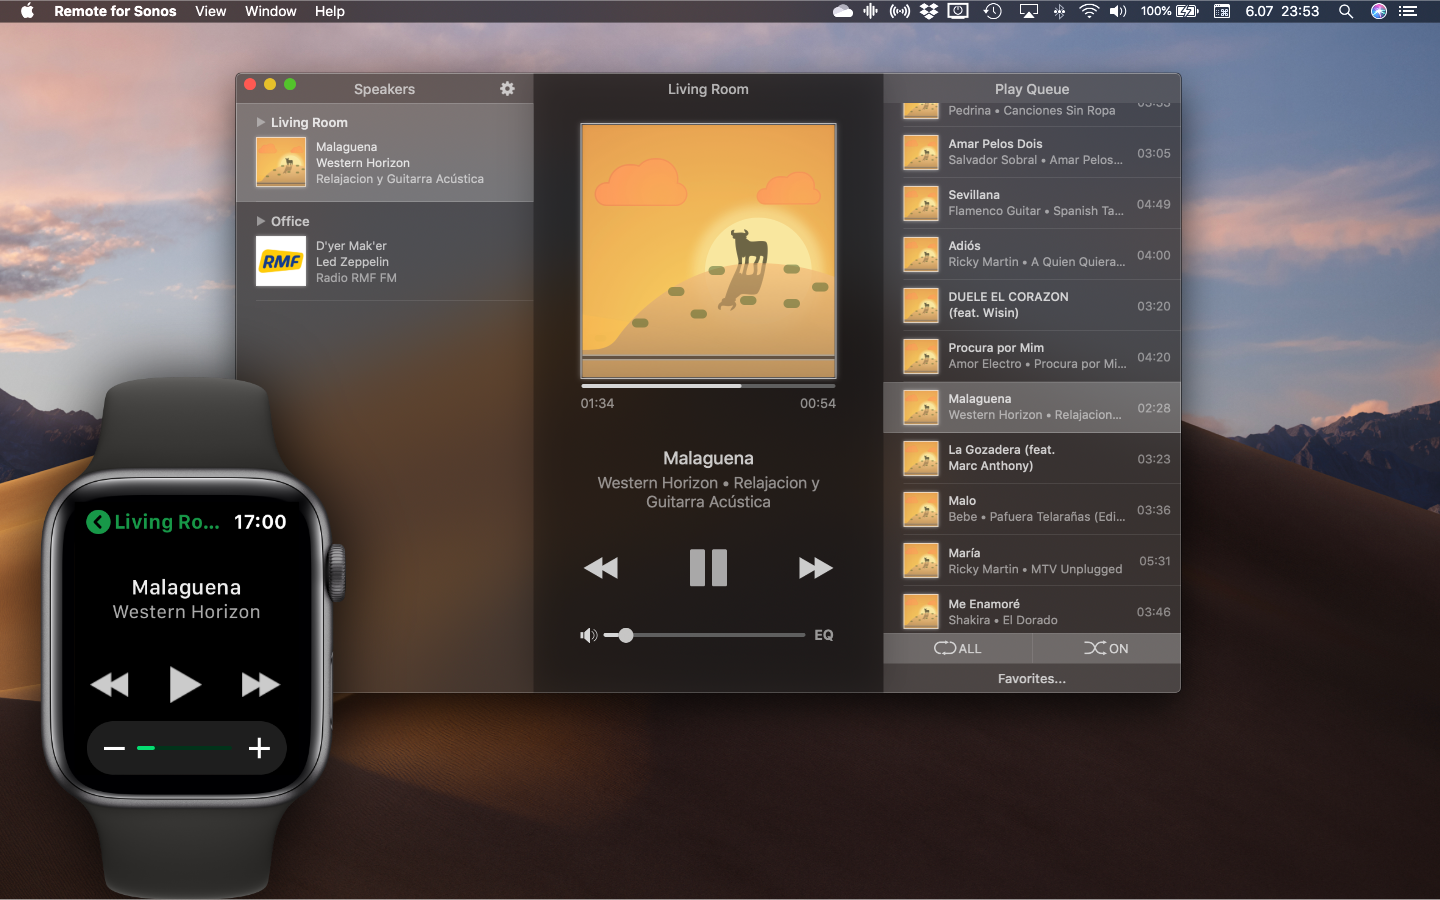 Apple Watch Apps Appear On Mac